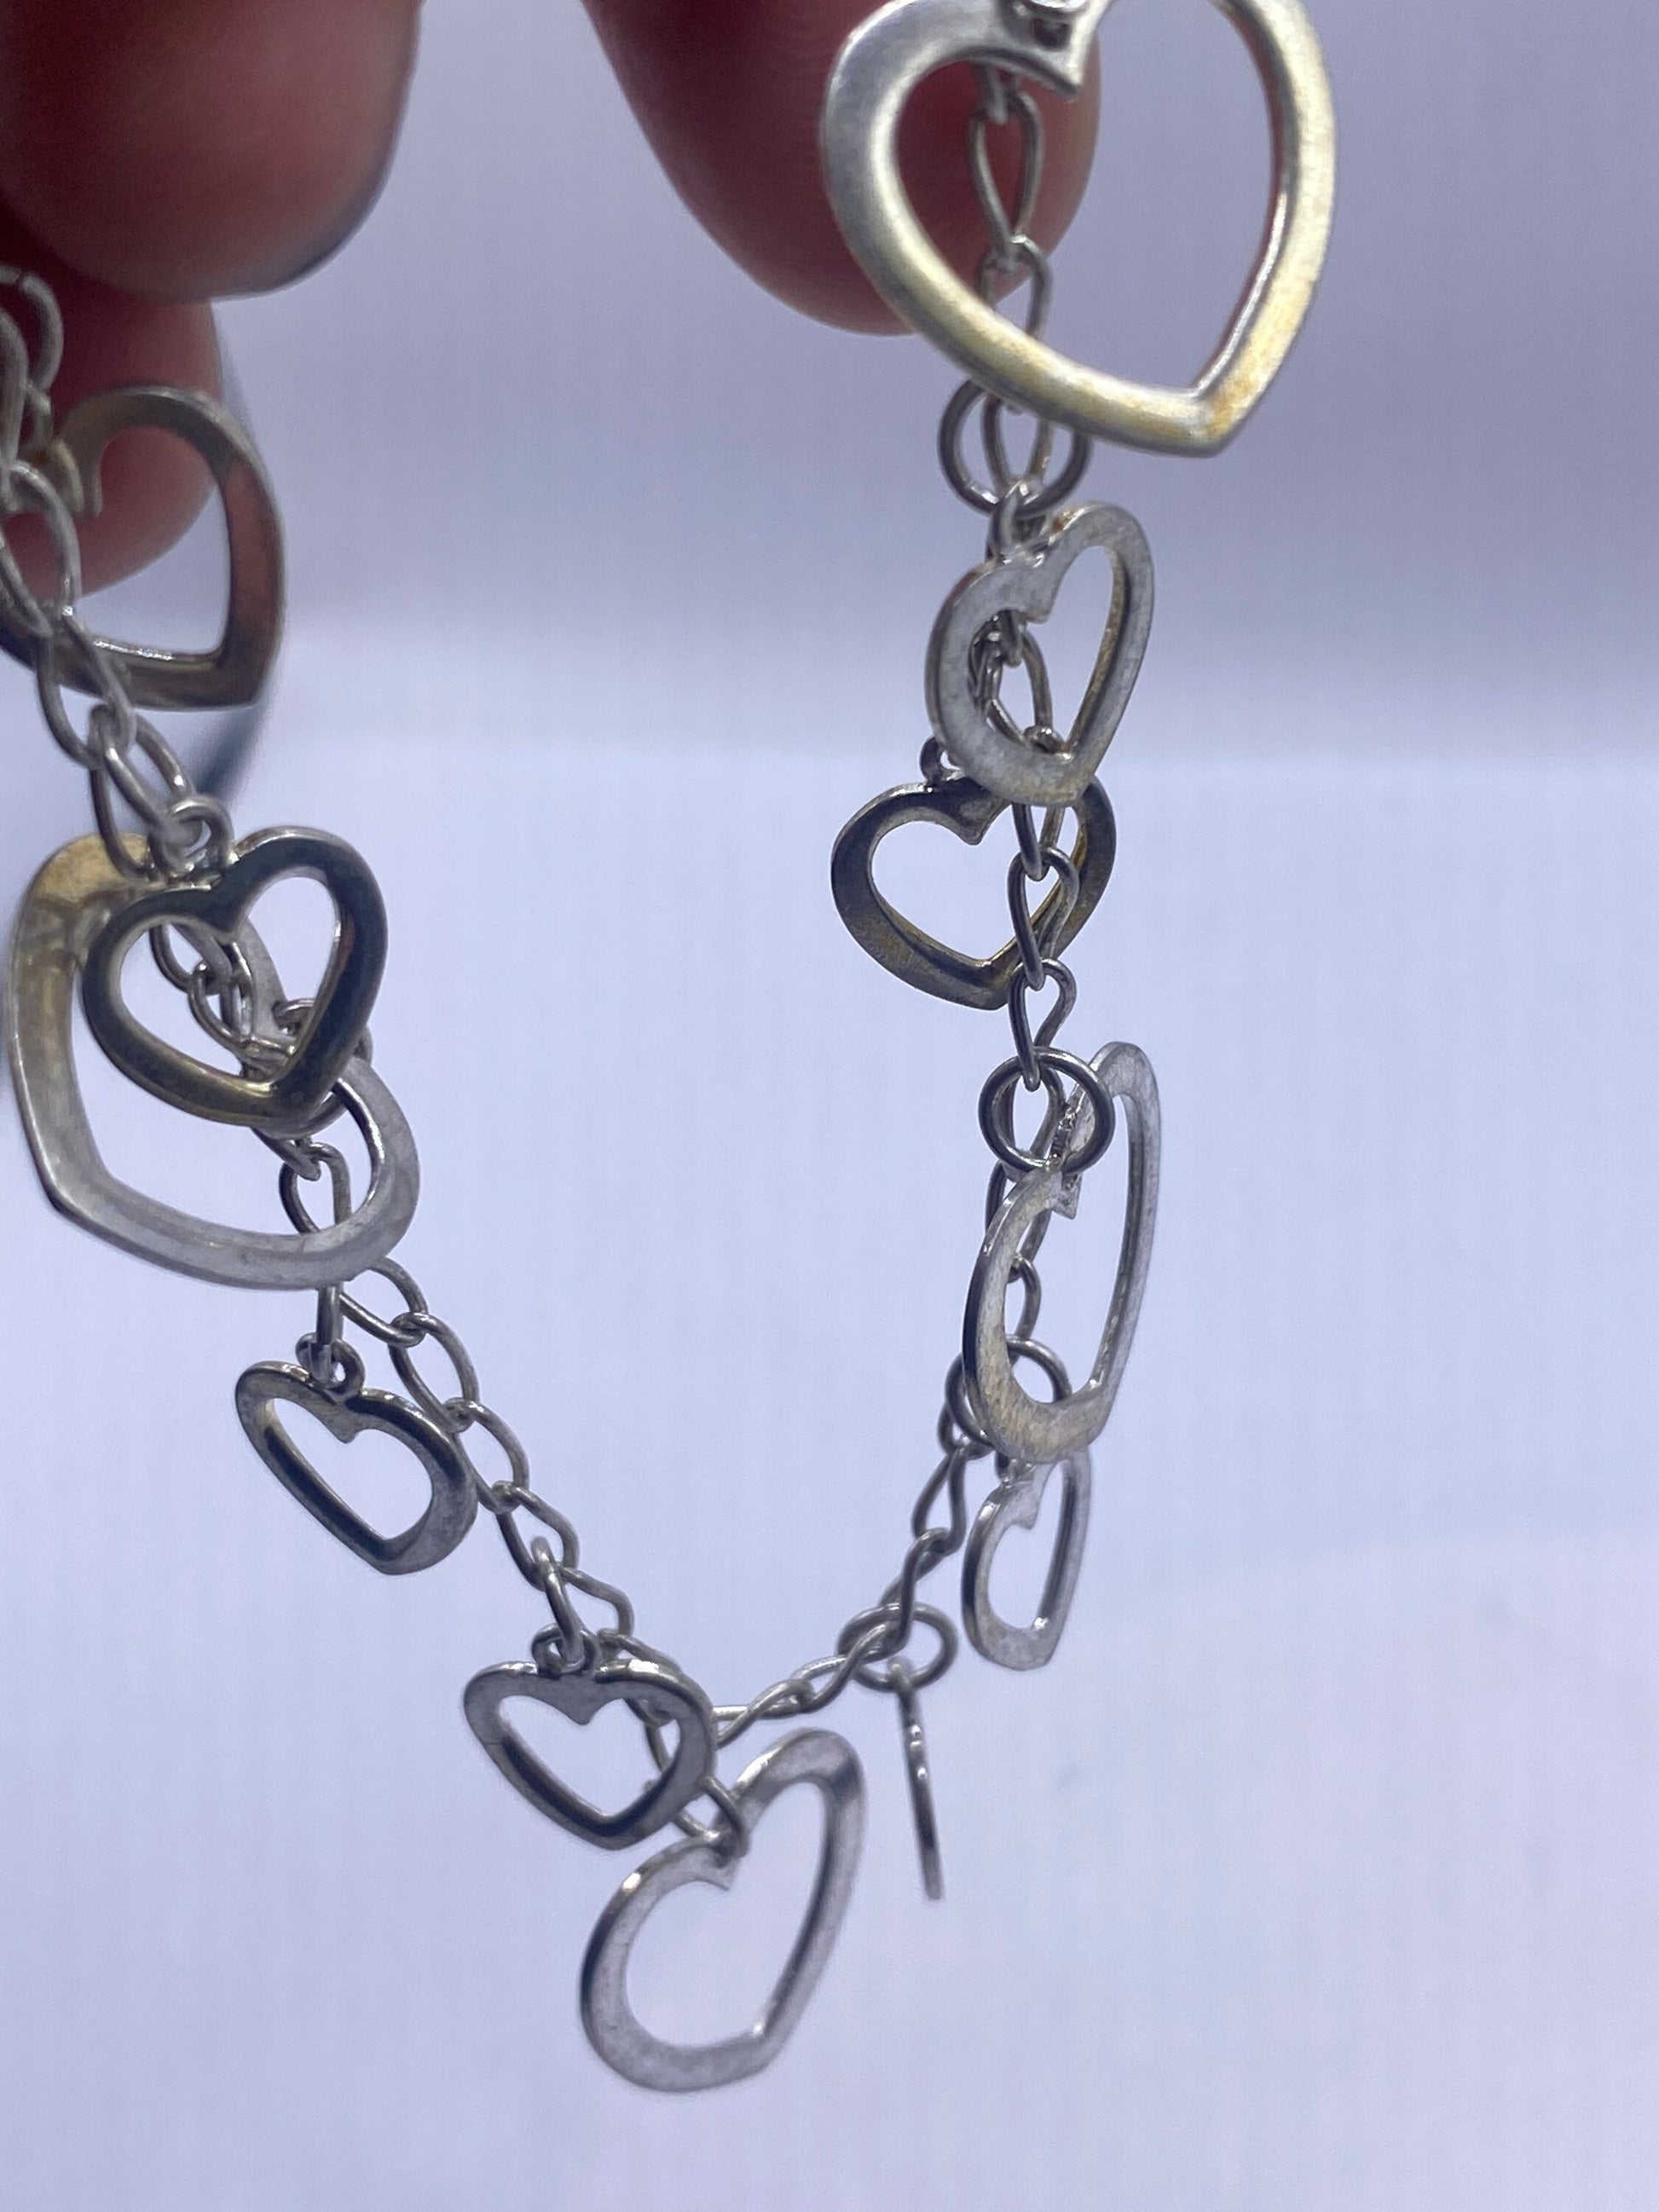 Vintage 925 Sterling Silver Heart Chain Link Bracelet